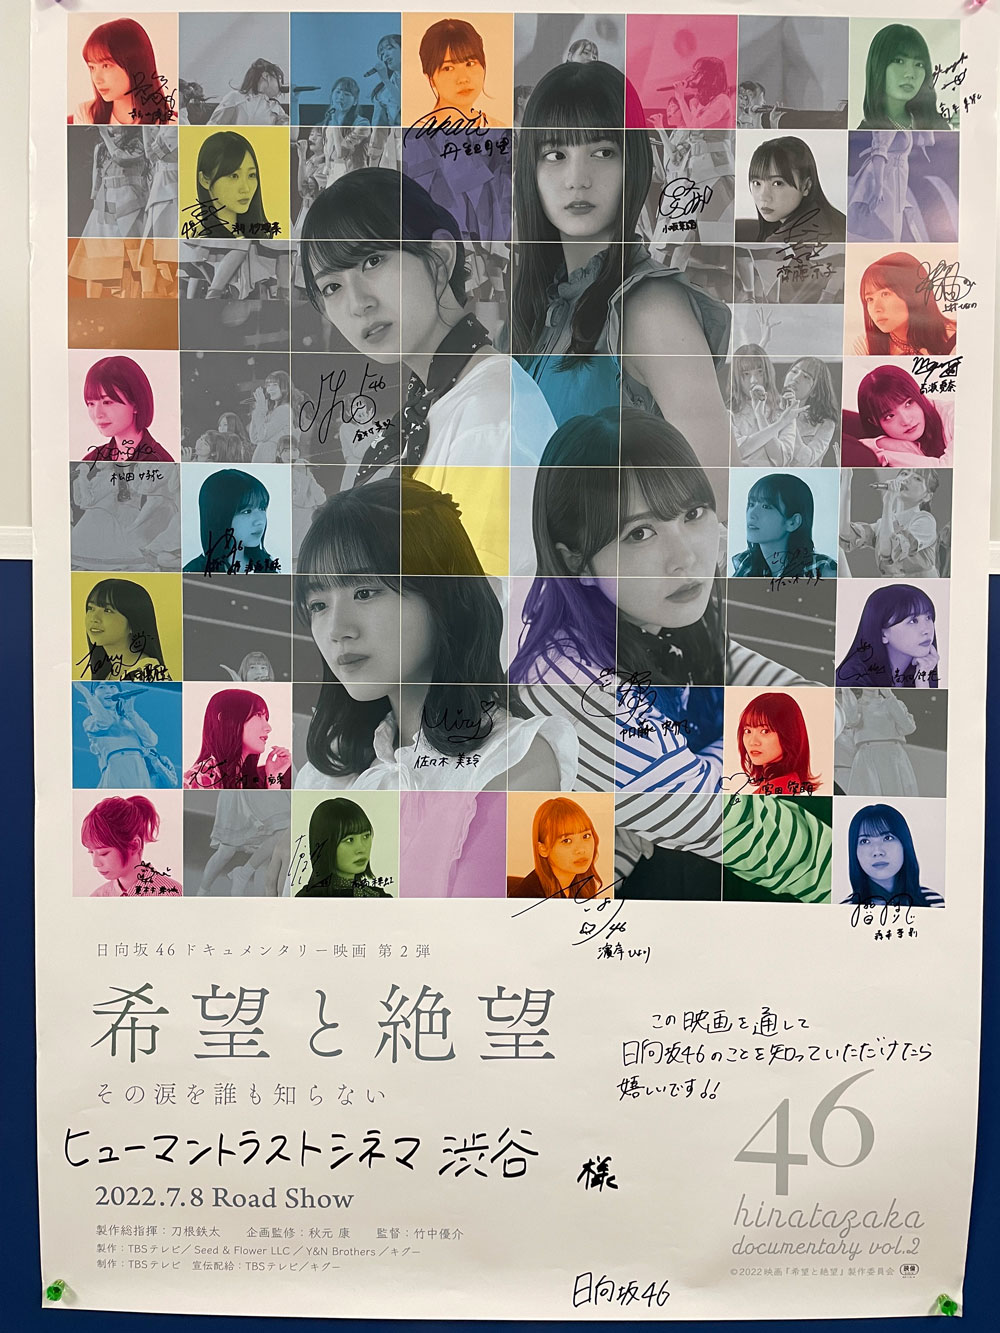 映画『希望と絶望』公式サイト｜日向坂46 Documentary Film 2nd